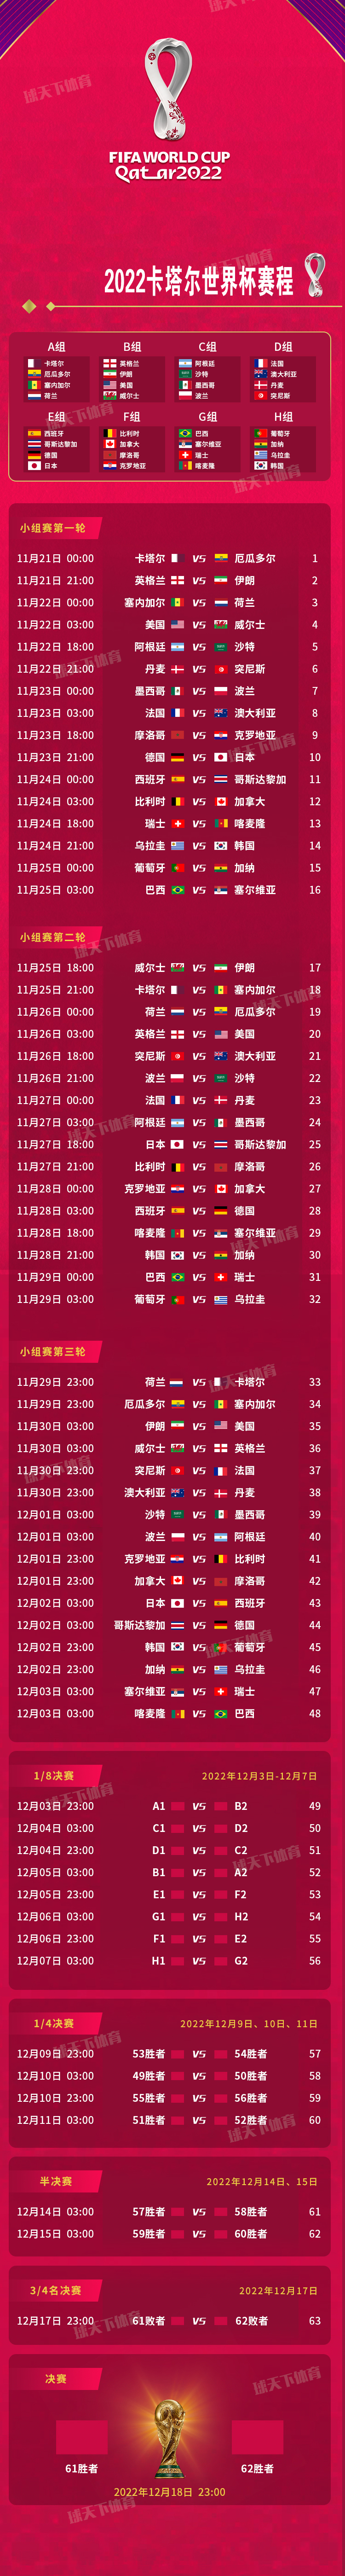 2022年卡塔尔世界杯完整赛程时间表